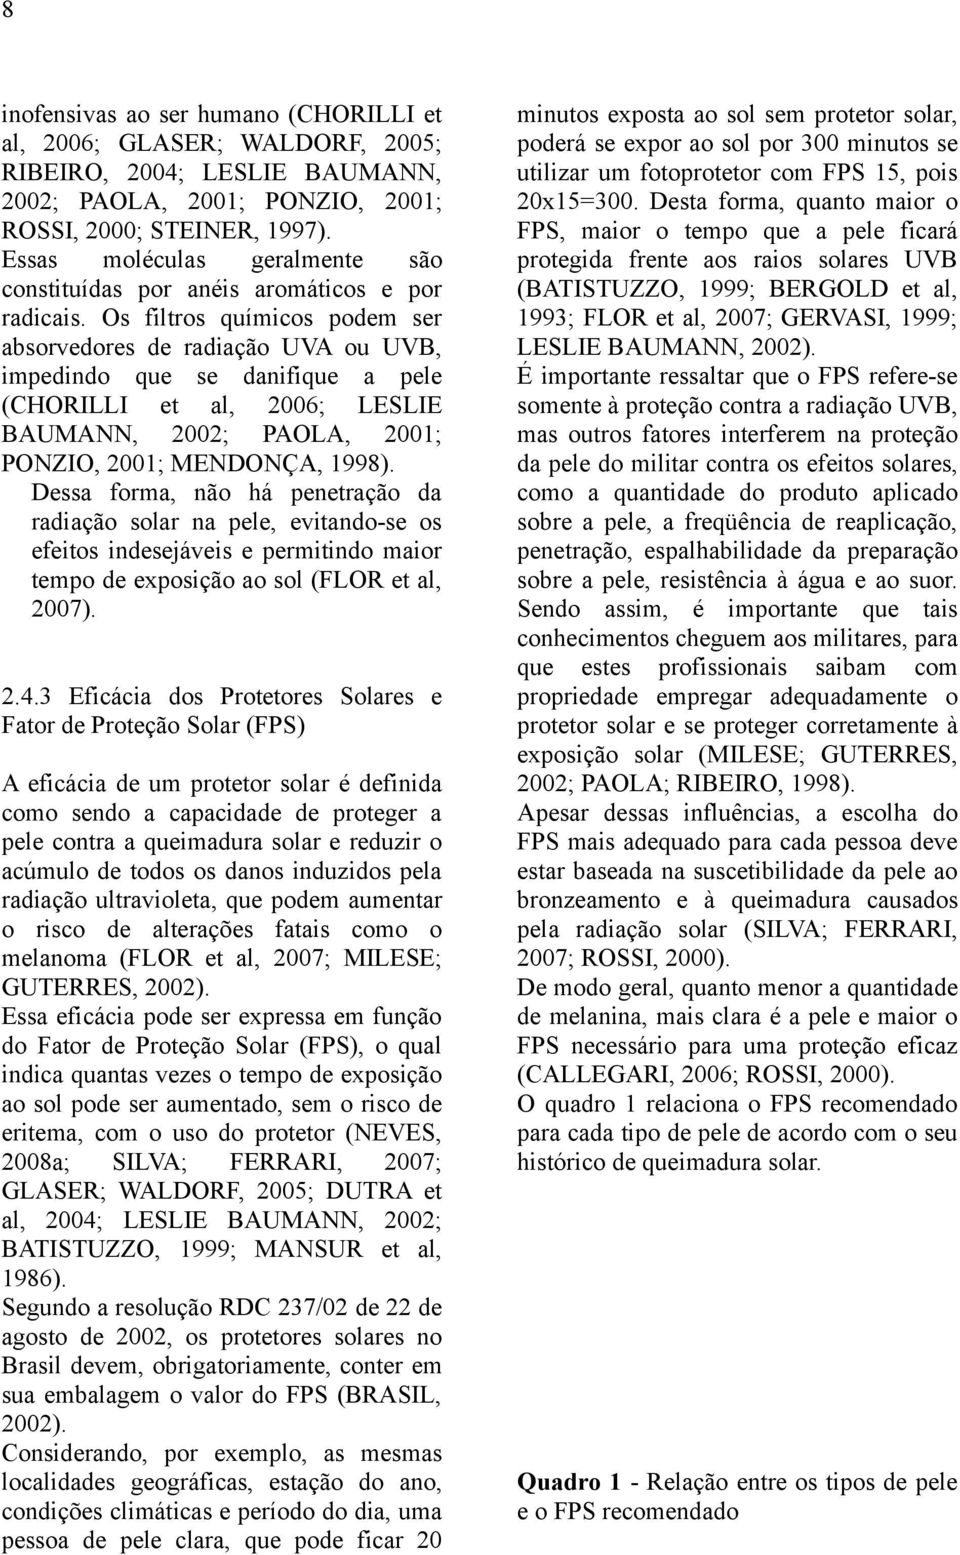 Os filtros químicos podem ser absorvedores de radiação UVA ou UVB, impedindo que se danifique a pele (CHORILLI et al, 2006; LESLIE BAUMANN, 2002; PAOLA, 2001; PONZIO, 2001; MENDONÇA, 1998).